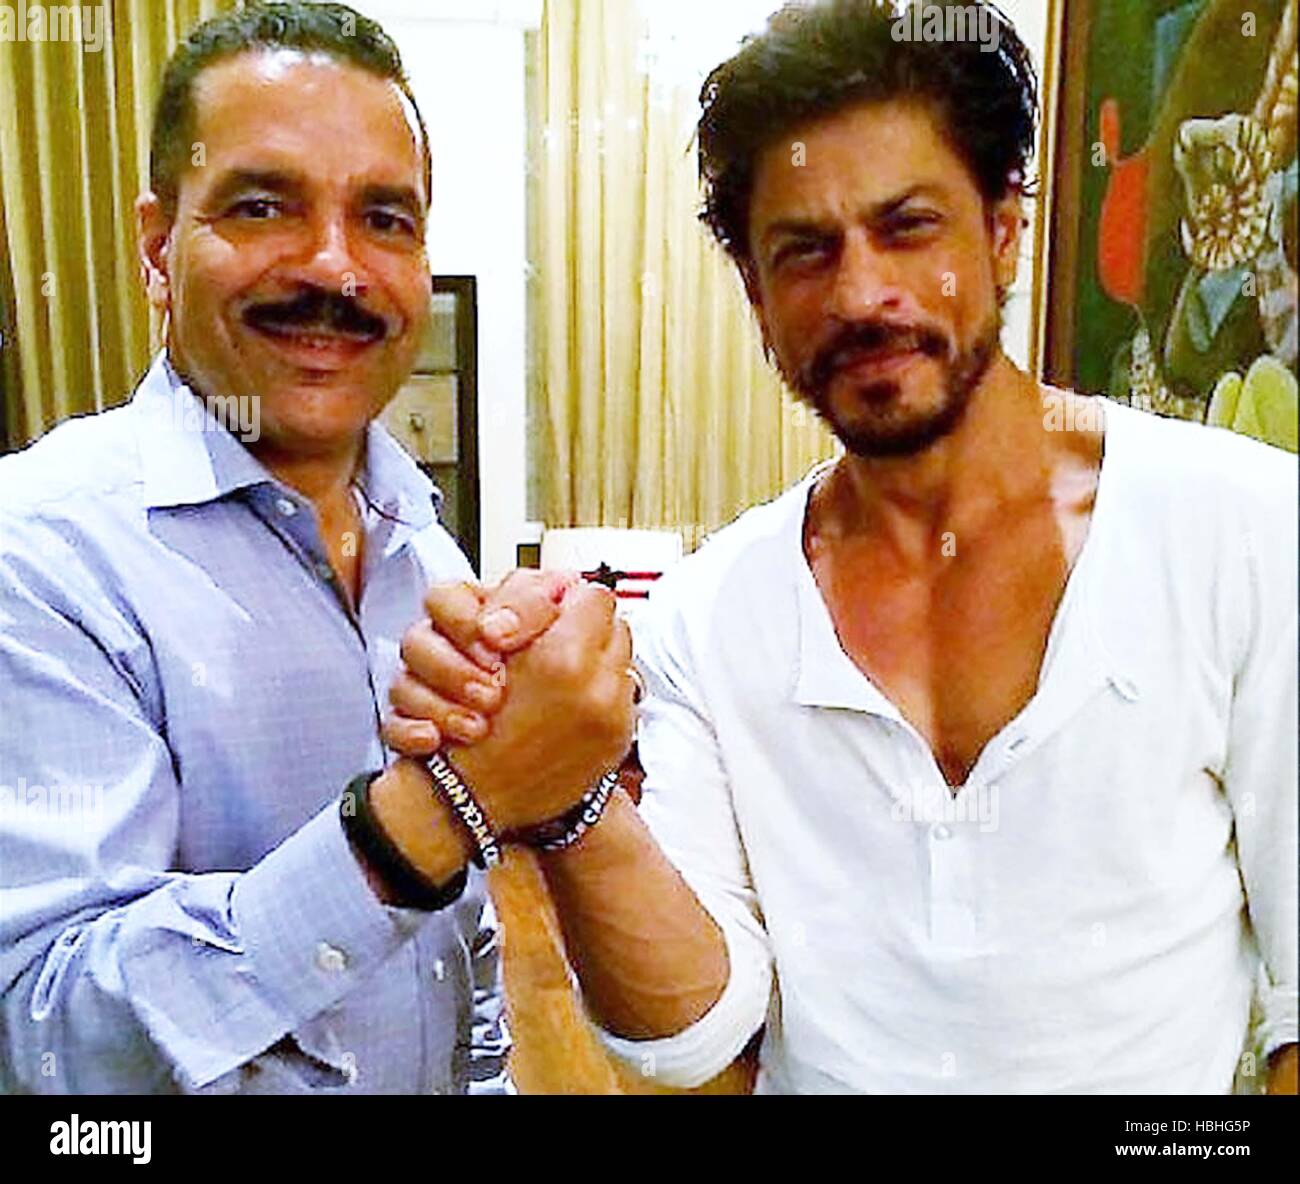 Ronald K Noble, INTERPOL-GENERALSEKRETÄR, bewaffnet mit dem indischen Bollywood-Schauspieler Shah Rukh Khan in London, England, Großbritannien Stockfoto